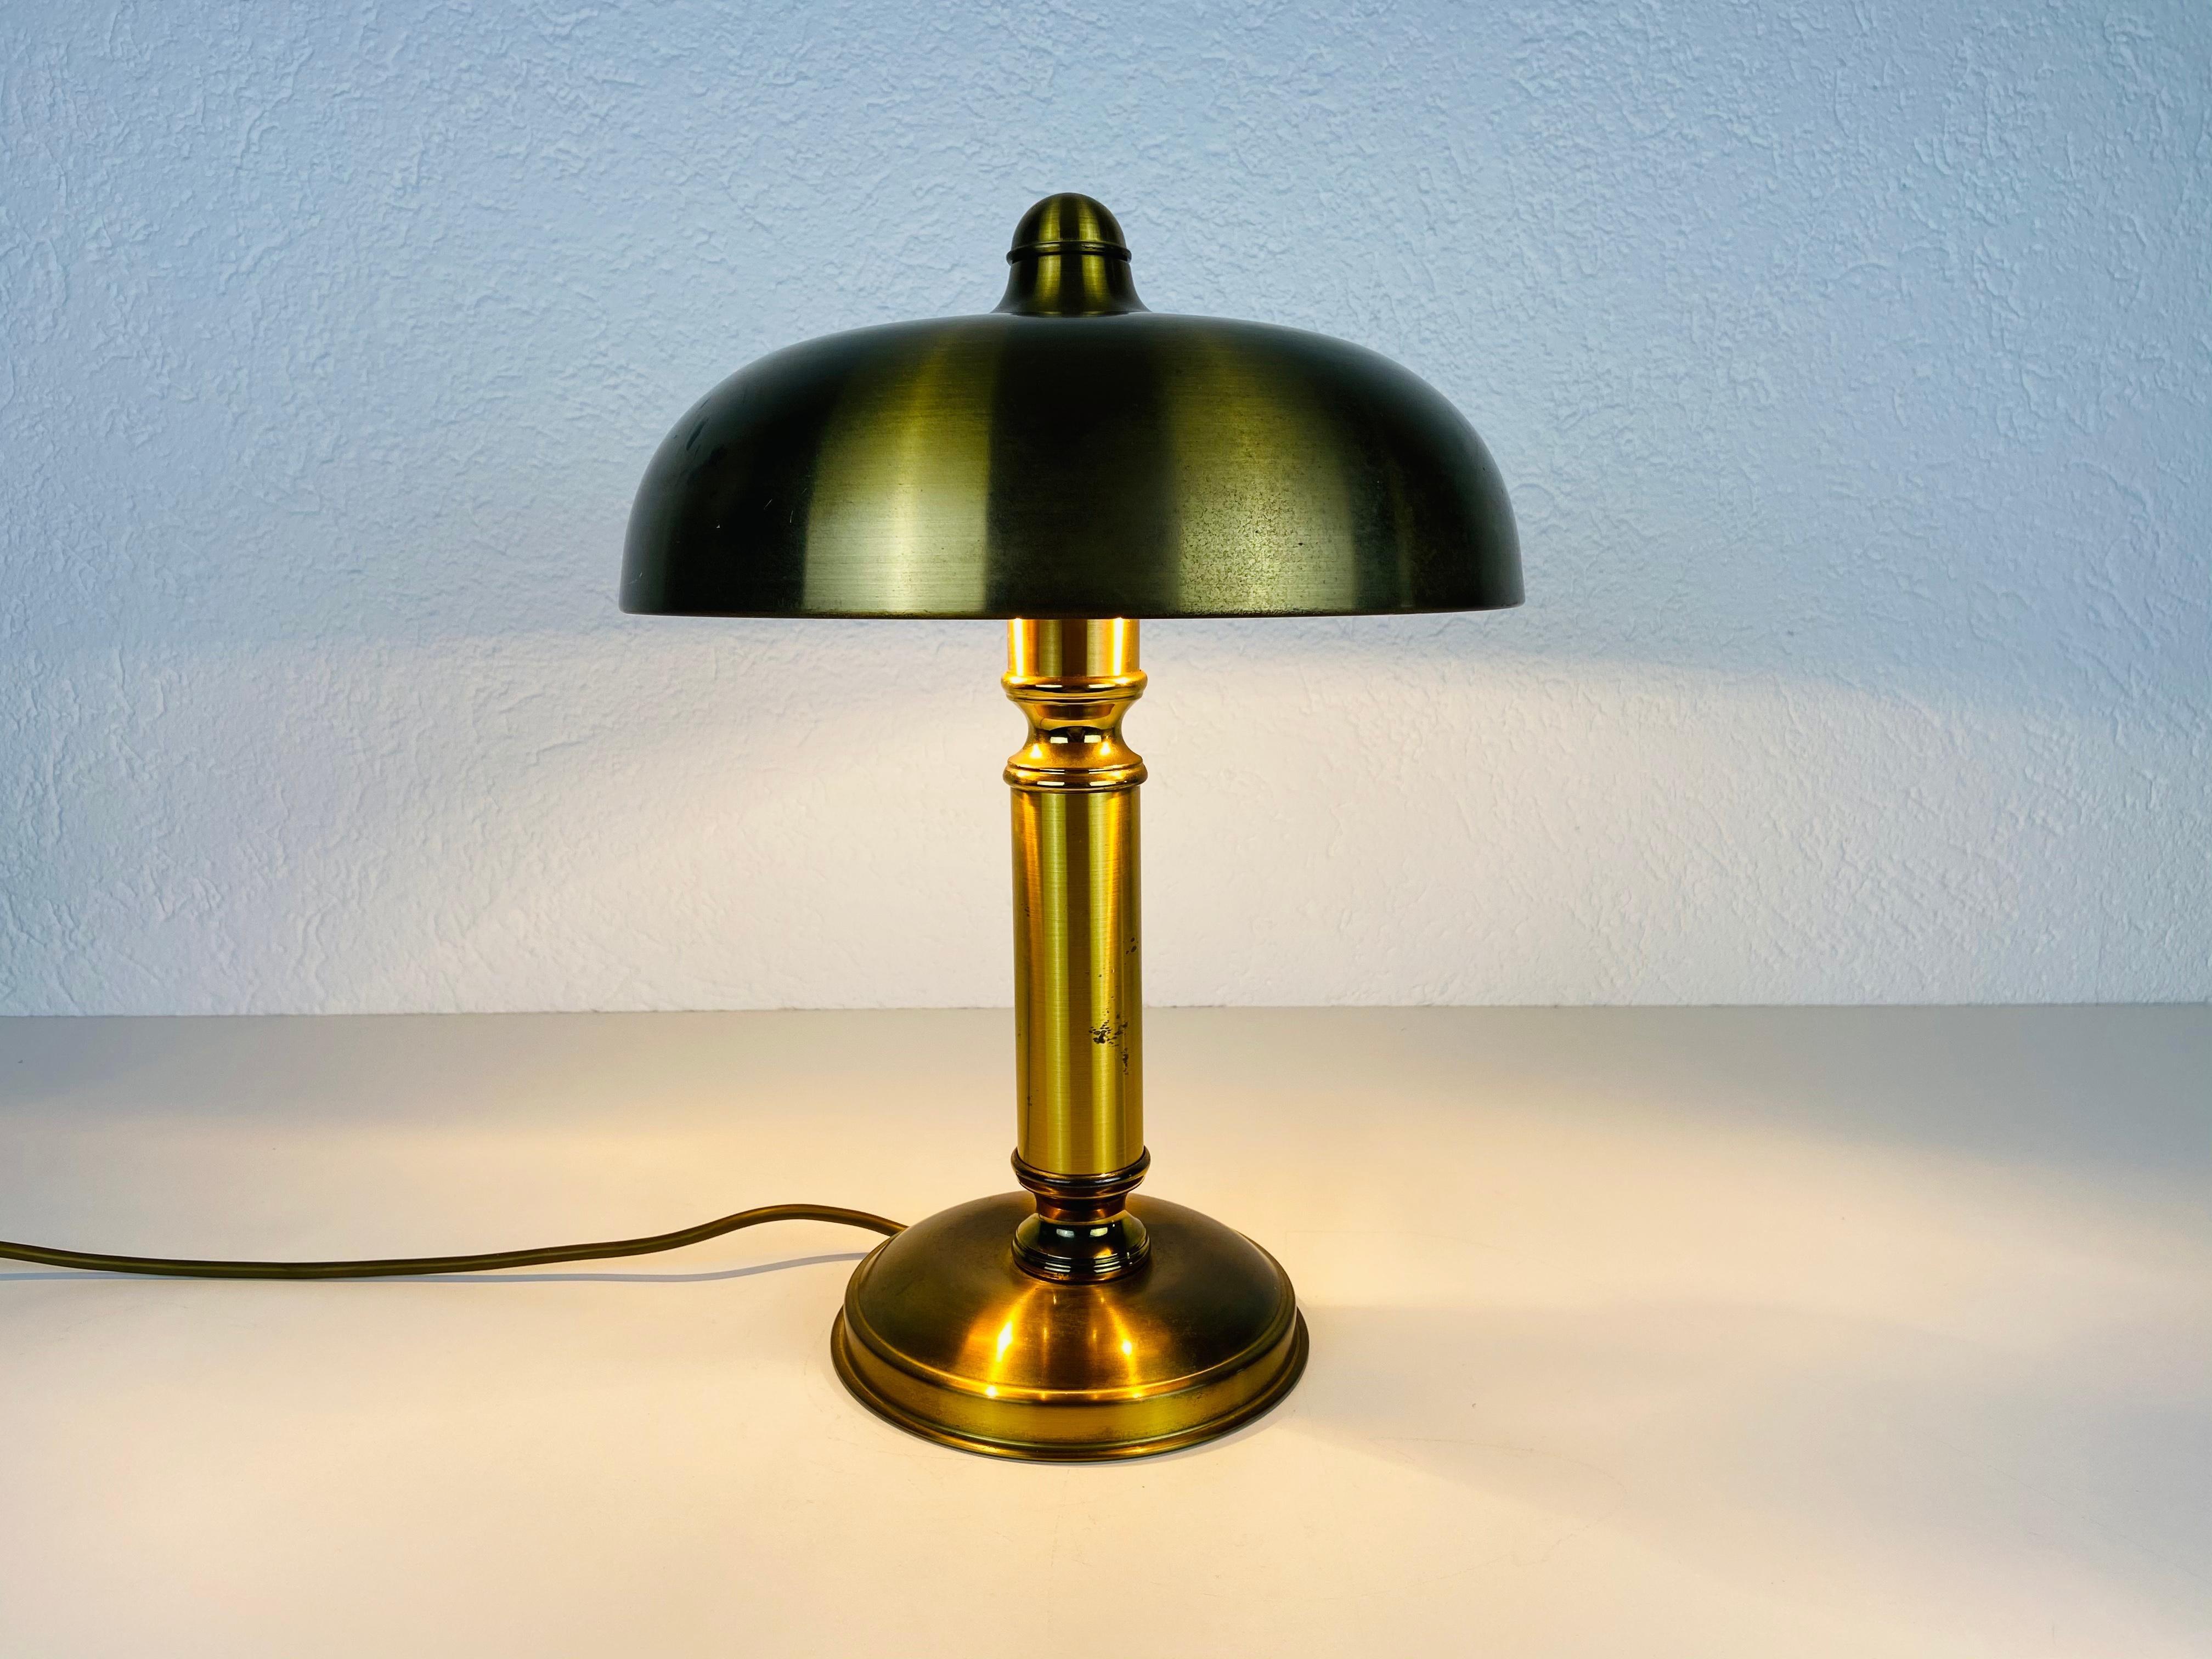 Eine von zwei Tischlampen, die in den 1960er Jahren in Deutschland hergestellt wurden.

Die Leuchte benötigt eine E27 (US E26) Glühbirne. Funktioniert sowohl mit 220V/120V. Guter alter Zustand.

Kostenloser weltweiter Expressversand.